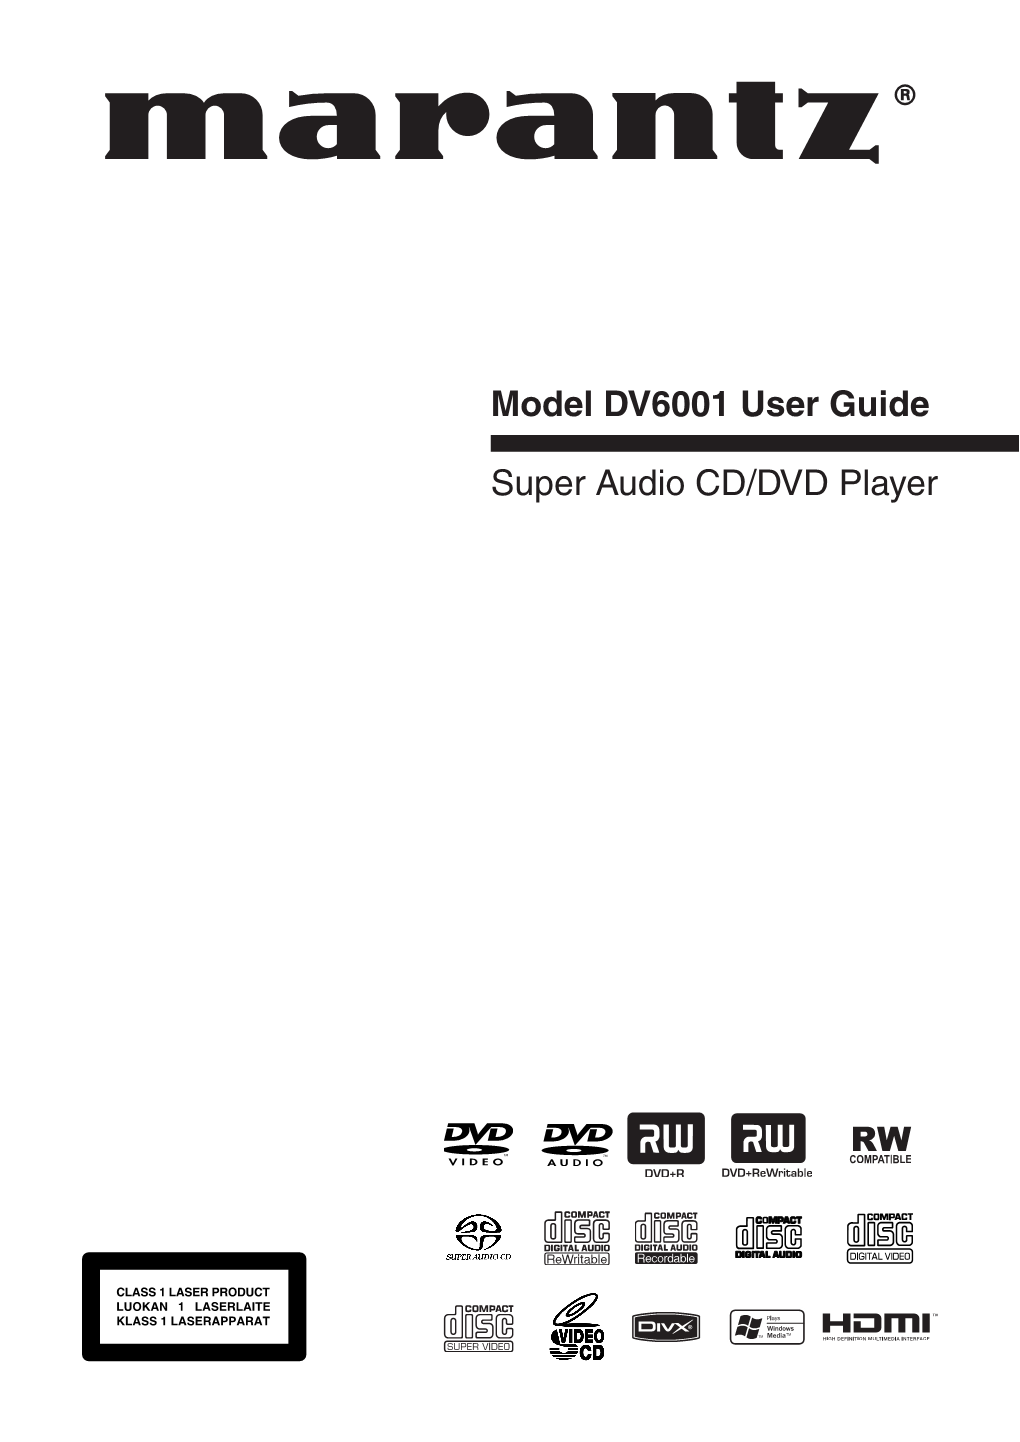 Model DV6001 User Guide Super Audio CD/DVD Player